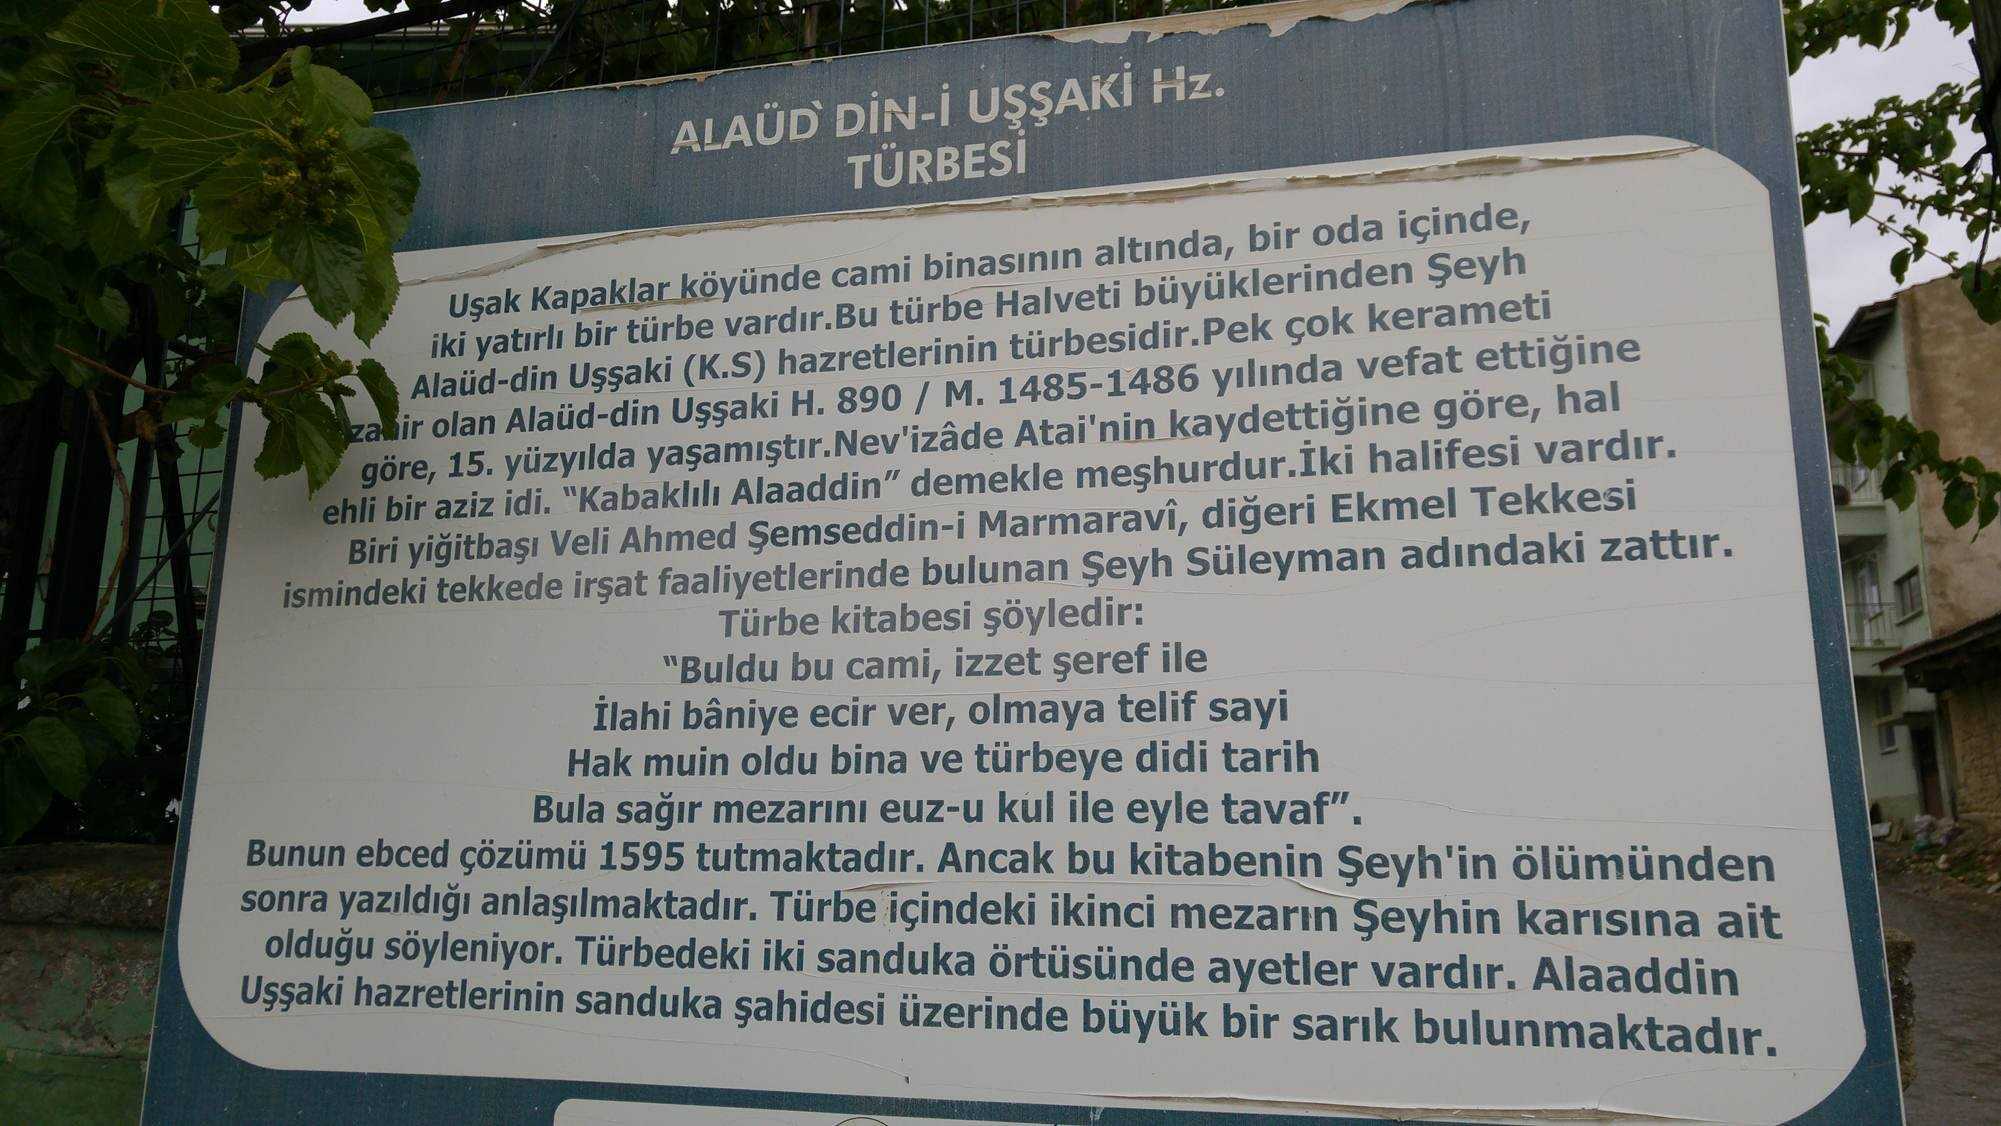 Alaaddin Uşşaki (k.s.)